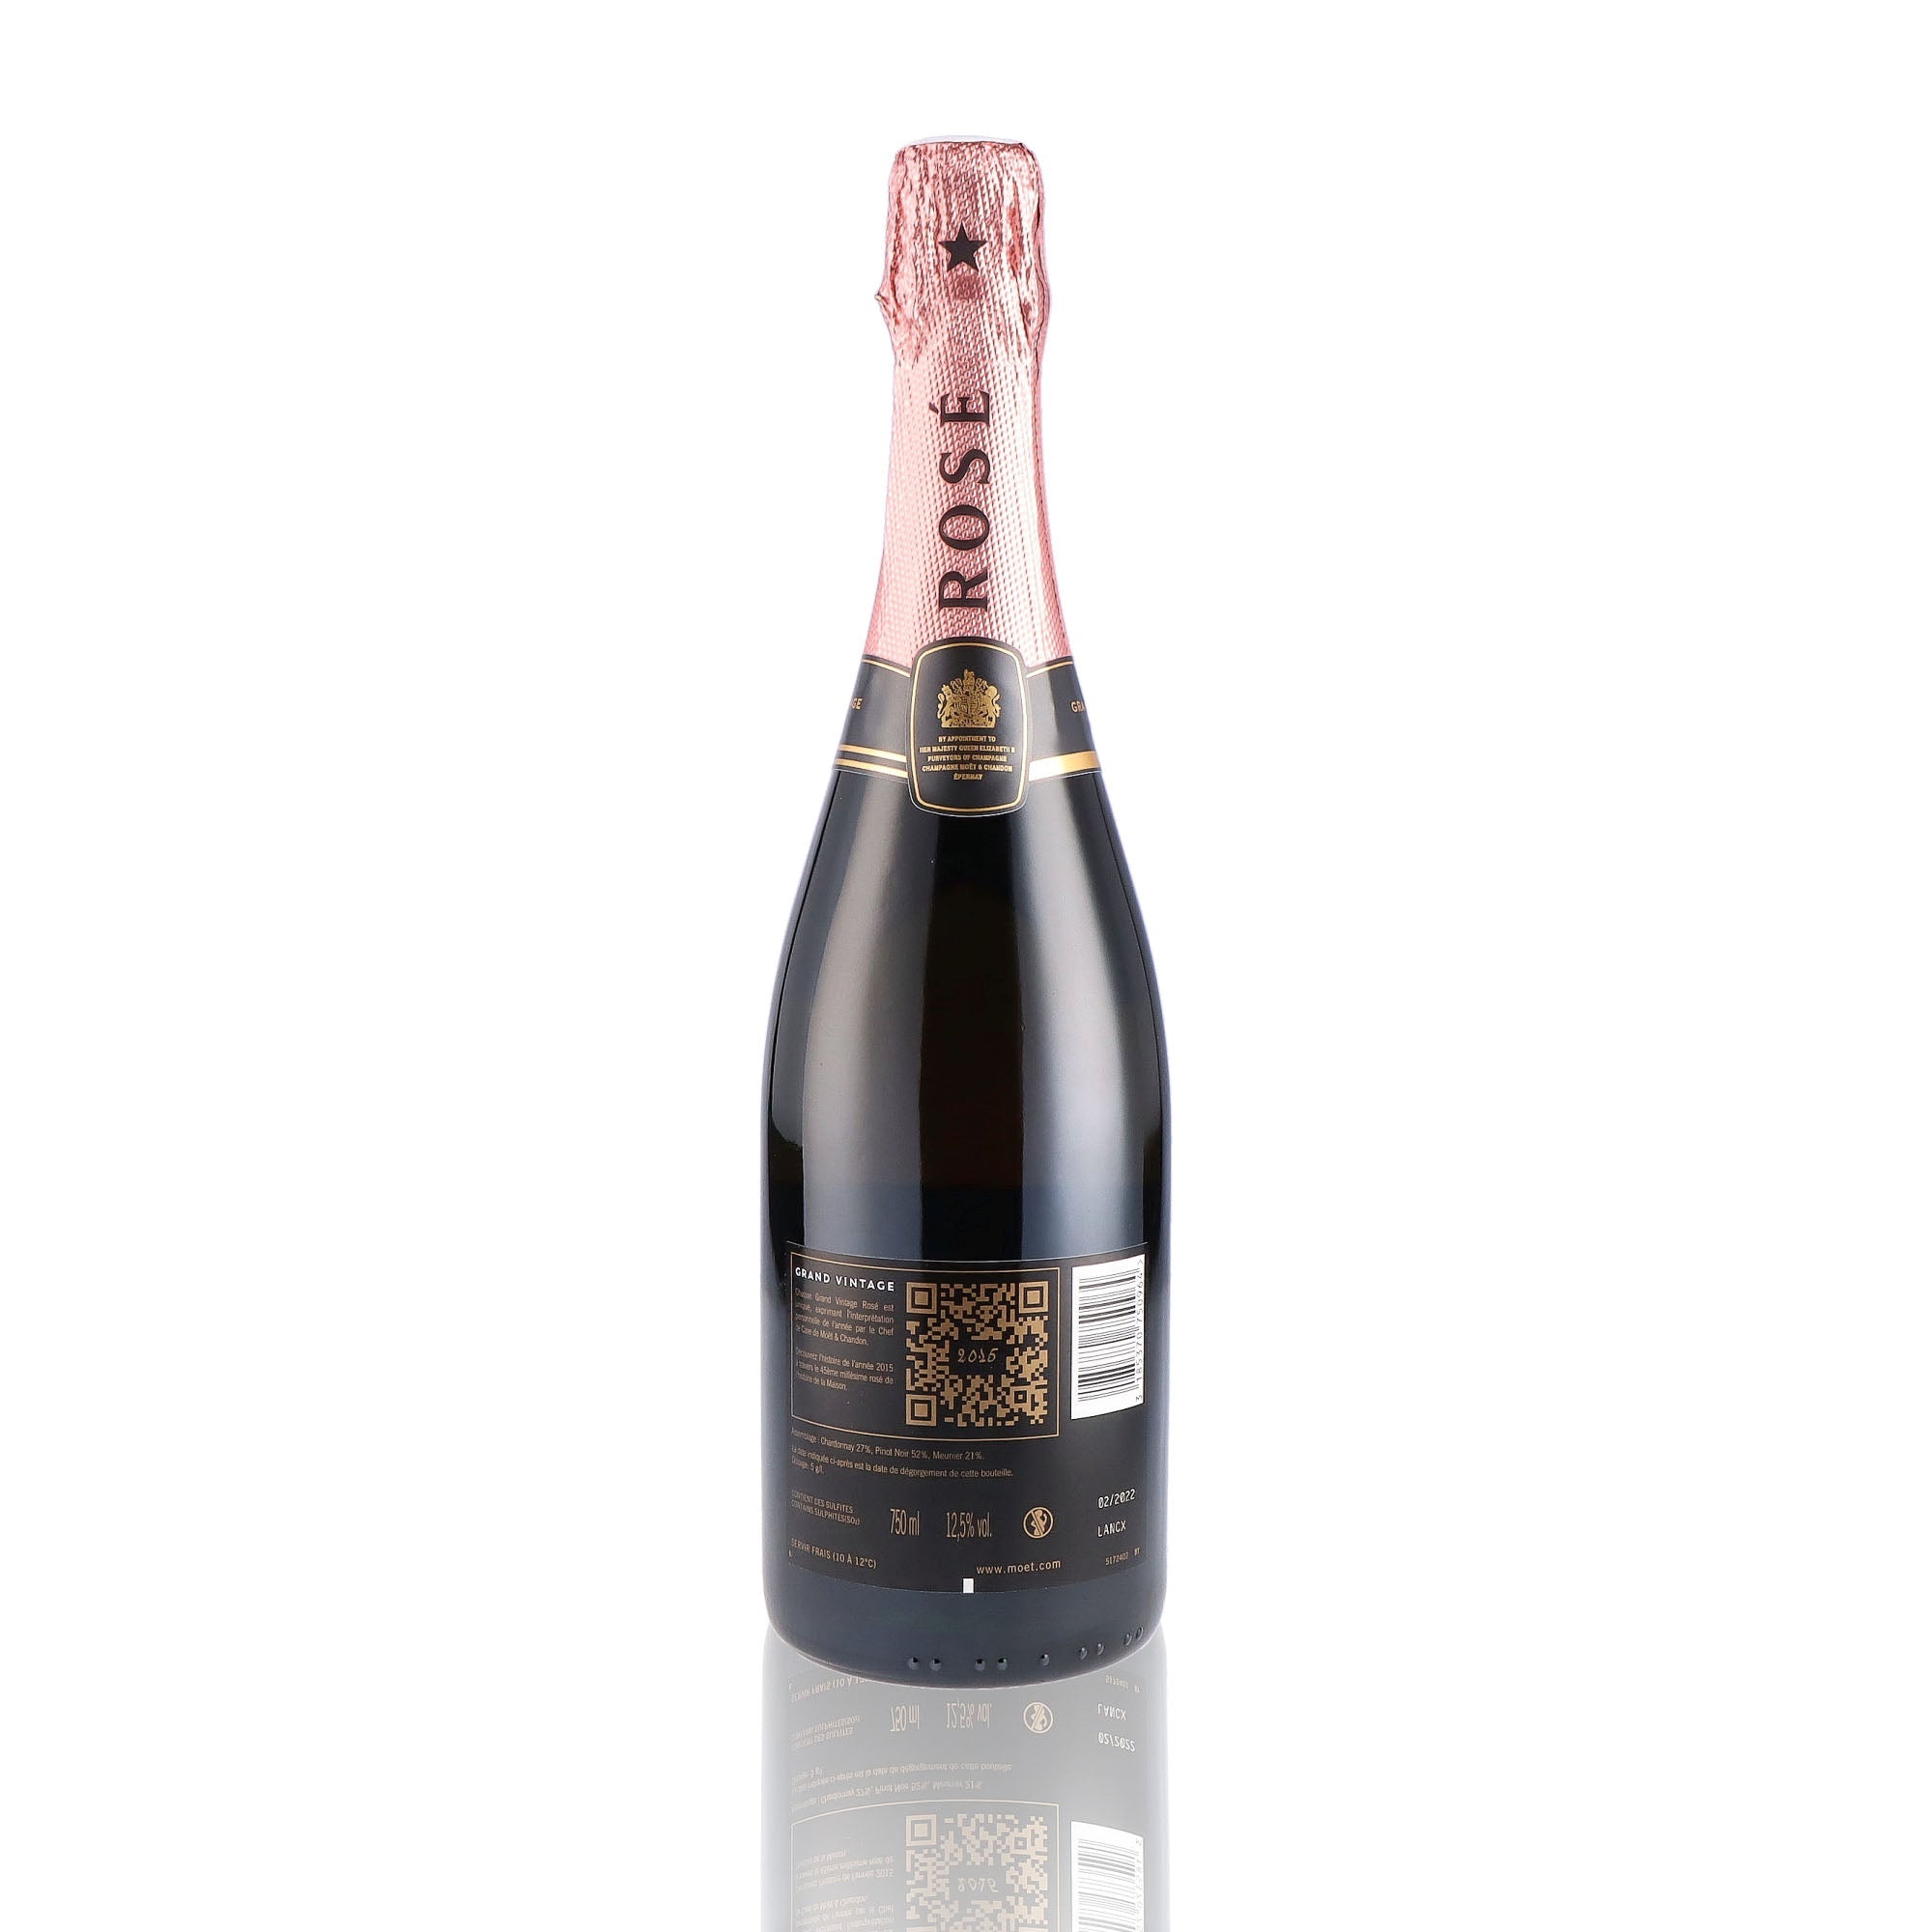 Une bouteille de champagne de la marque Moët et Chandon, de type rosé, nommée grand vintage, millésime 2015.